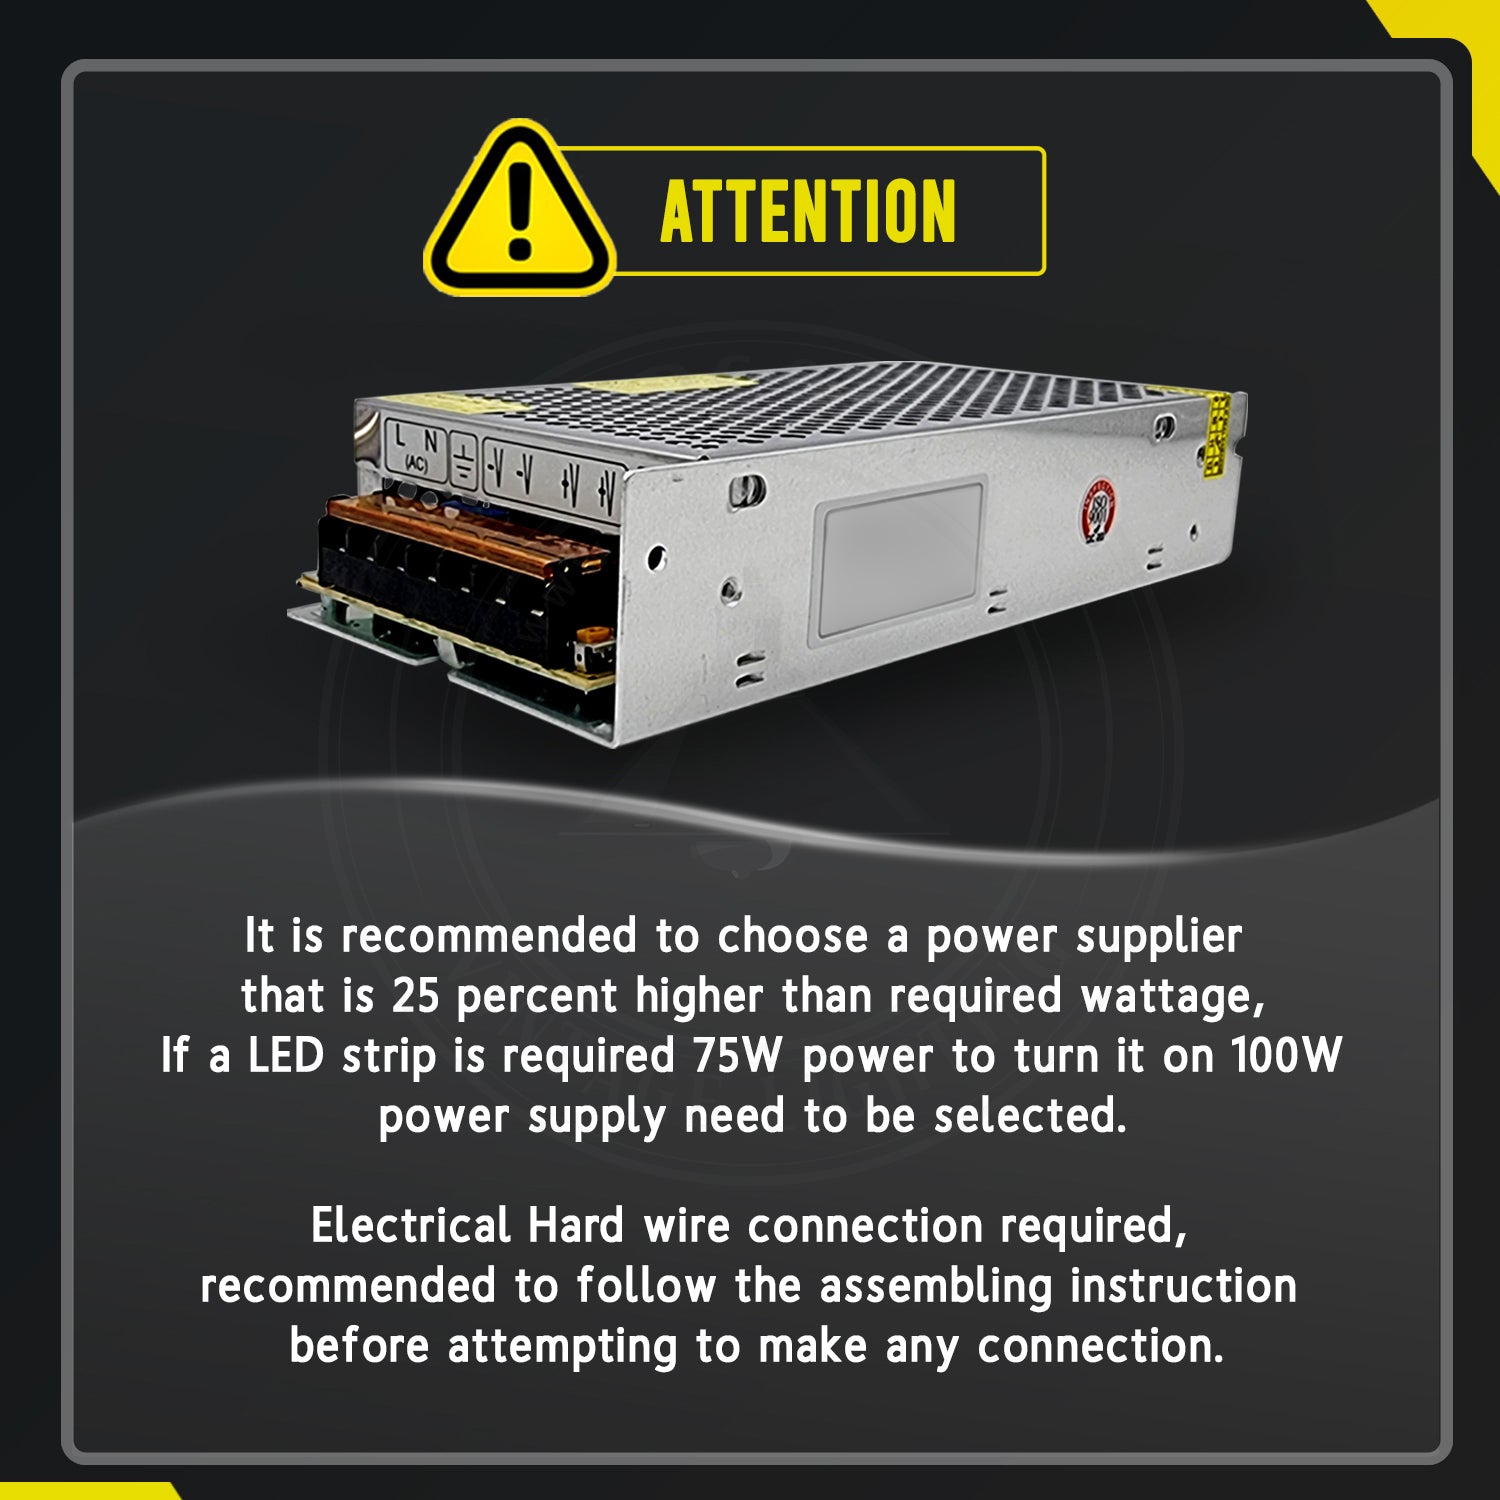 LED Driver DC 5V 10w IP20 2 Amp Constant Voltage Transformer - Attention Details